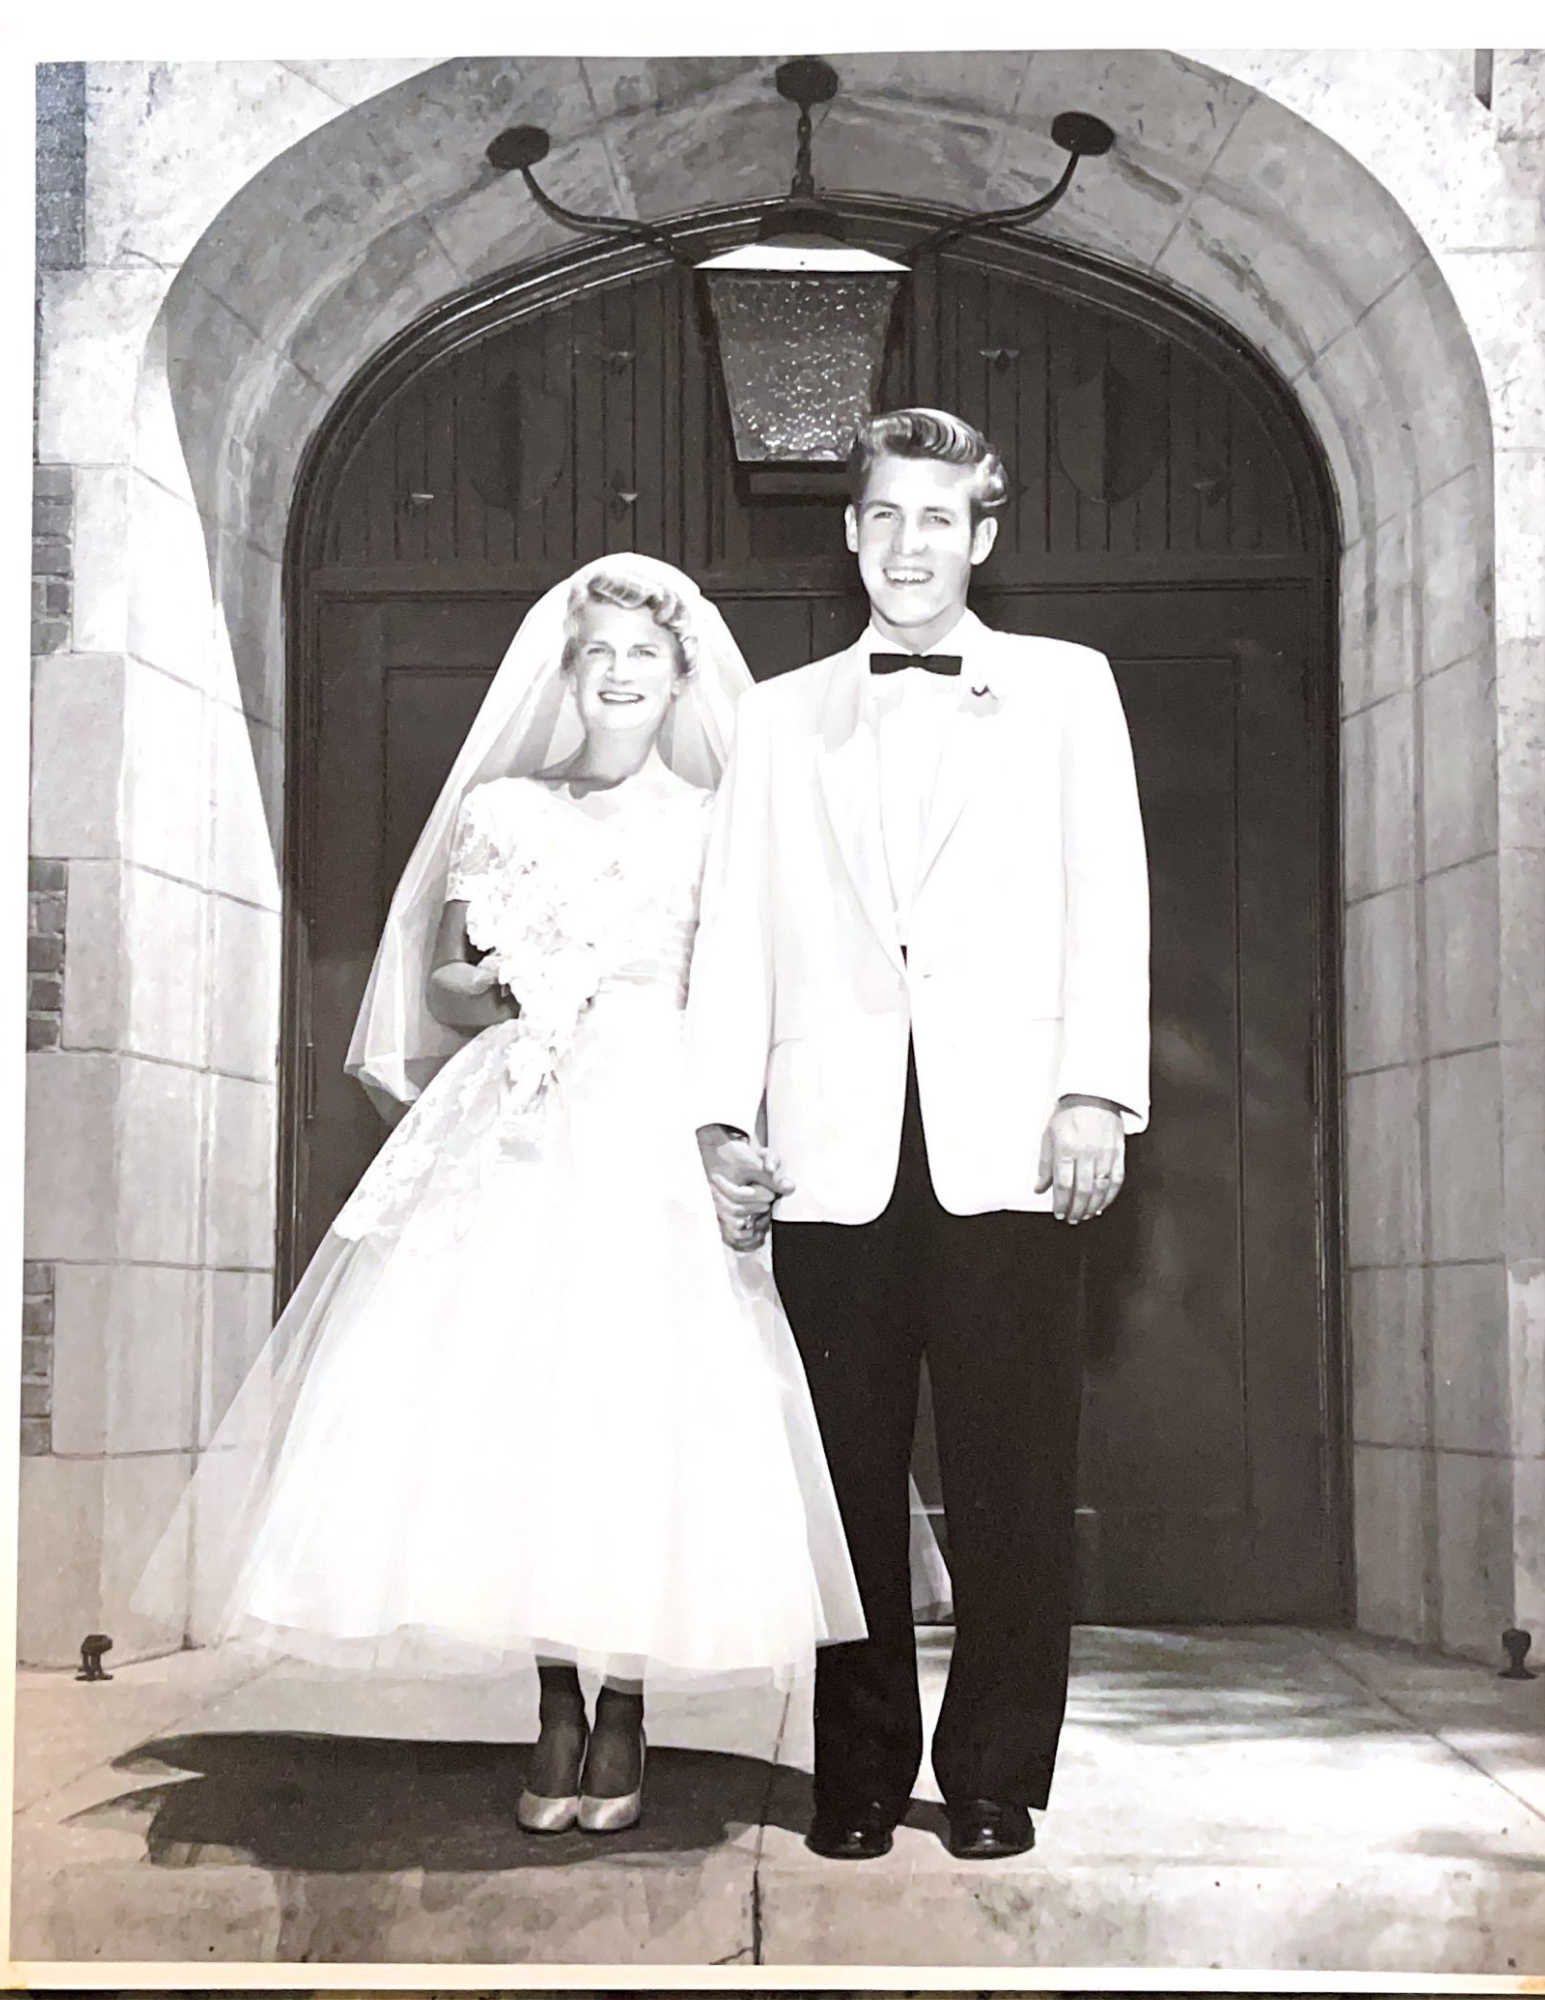 53岁的大卫·亨特和53岁的南希·法拉罗
1955年8月27日结婚
